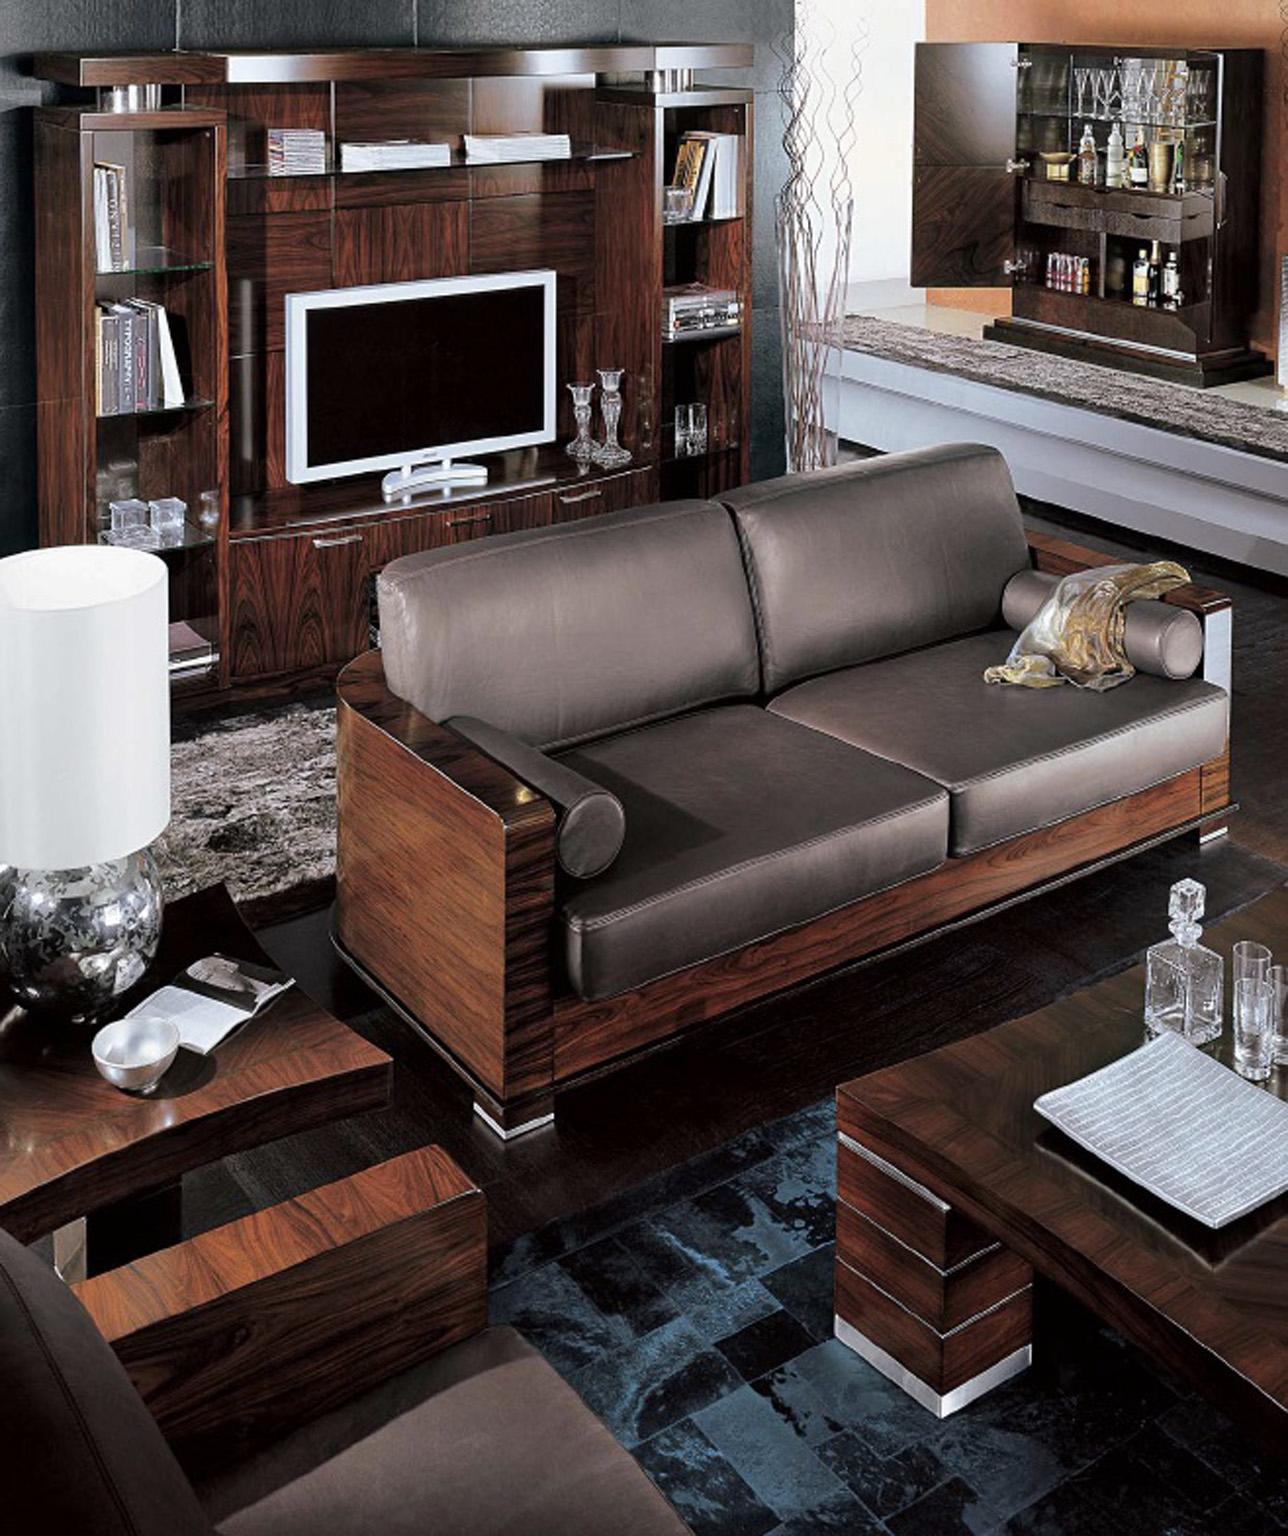 Giorgio Collection Paradiso Sofa 3 Sitzmöbel aus brasilianischem Palisanderholz in braunem Leder und satinierter Oberfläche.
Sofa mit 3 Sitzen aus brasilianischem Palisanderholz in Satinoptik mit Sitz und Rückenlehnen.
Bezogen mit braunem Leder